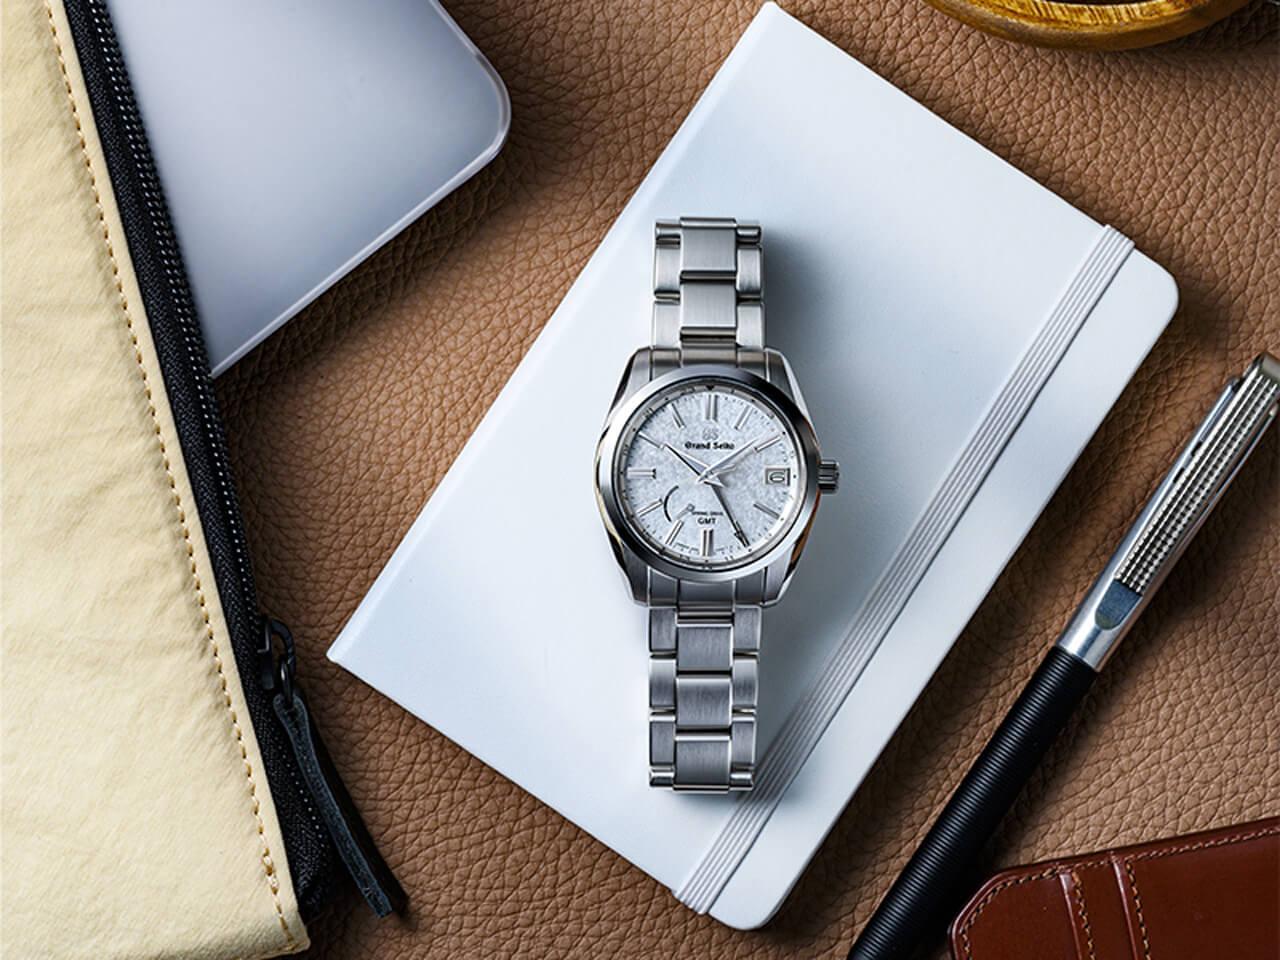 グランドセイコーは国内外問わず、腕時計初心者から腕時計通まで人気な日本一の有名腕時計ブランドである